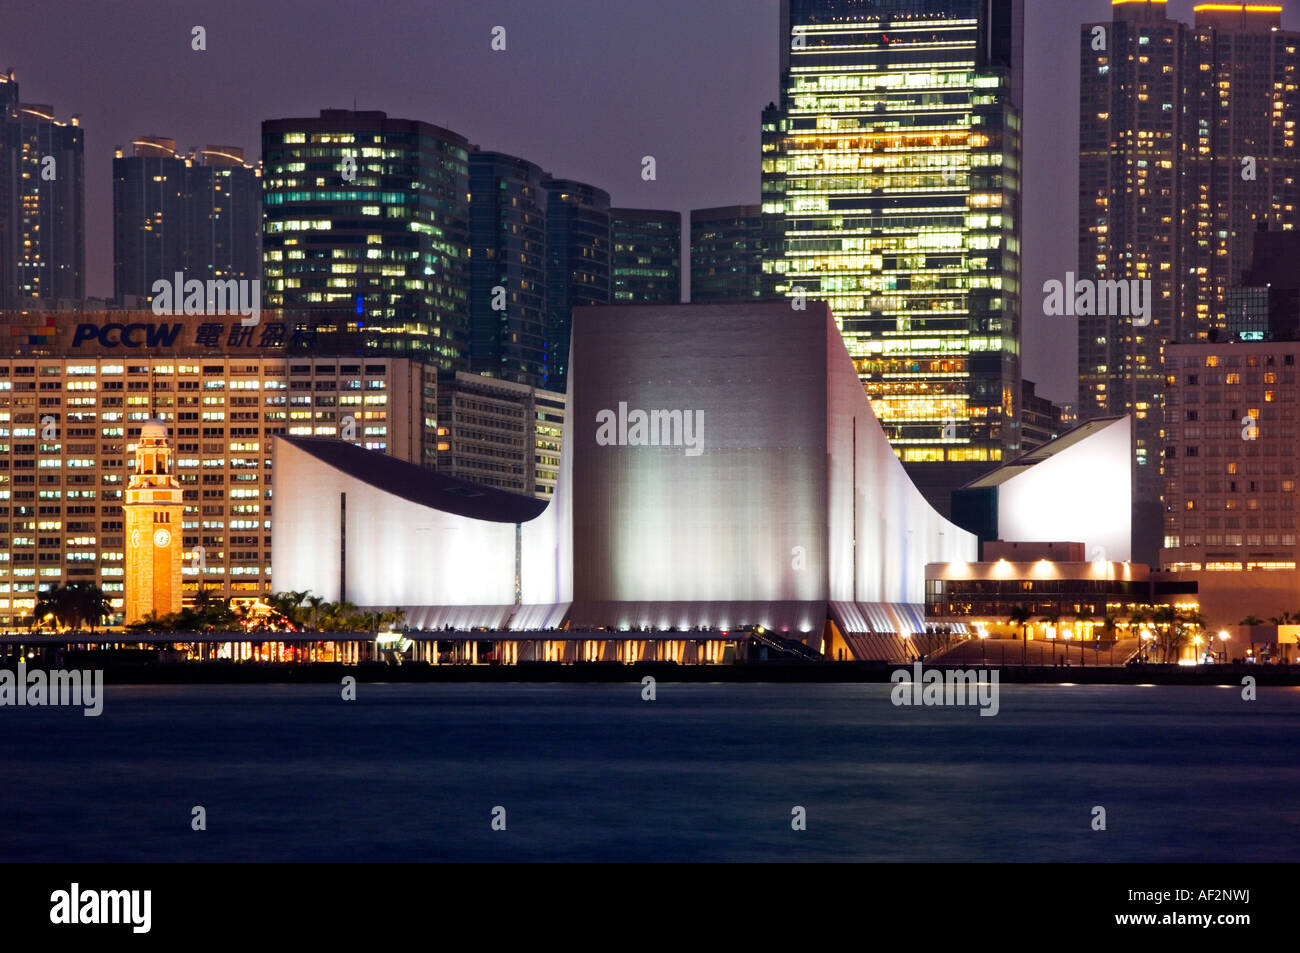 The Hong Kong Cultural Centre & Clocktower at Night, Tsim Sha Tsui, Kowloon, Hong Kong, China Stock Photo